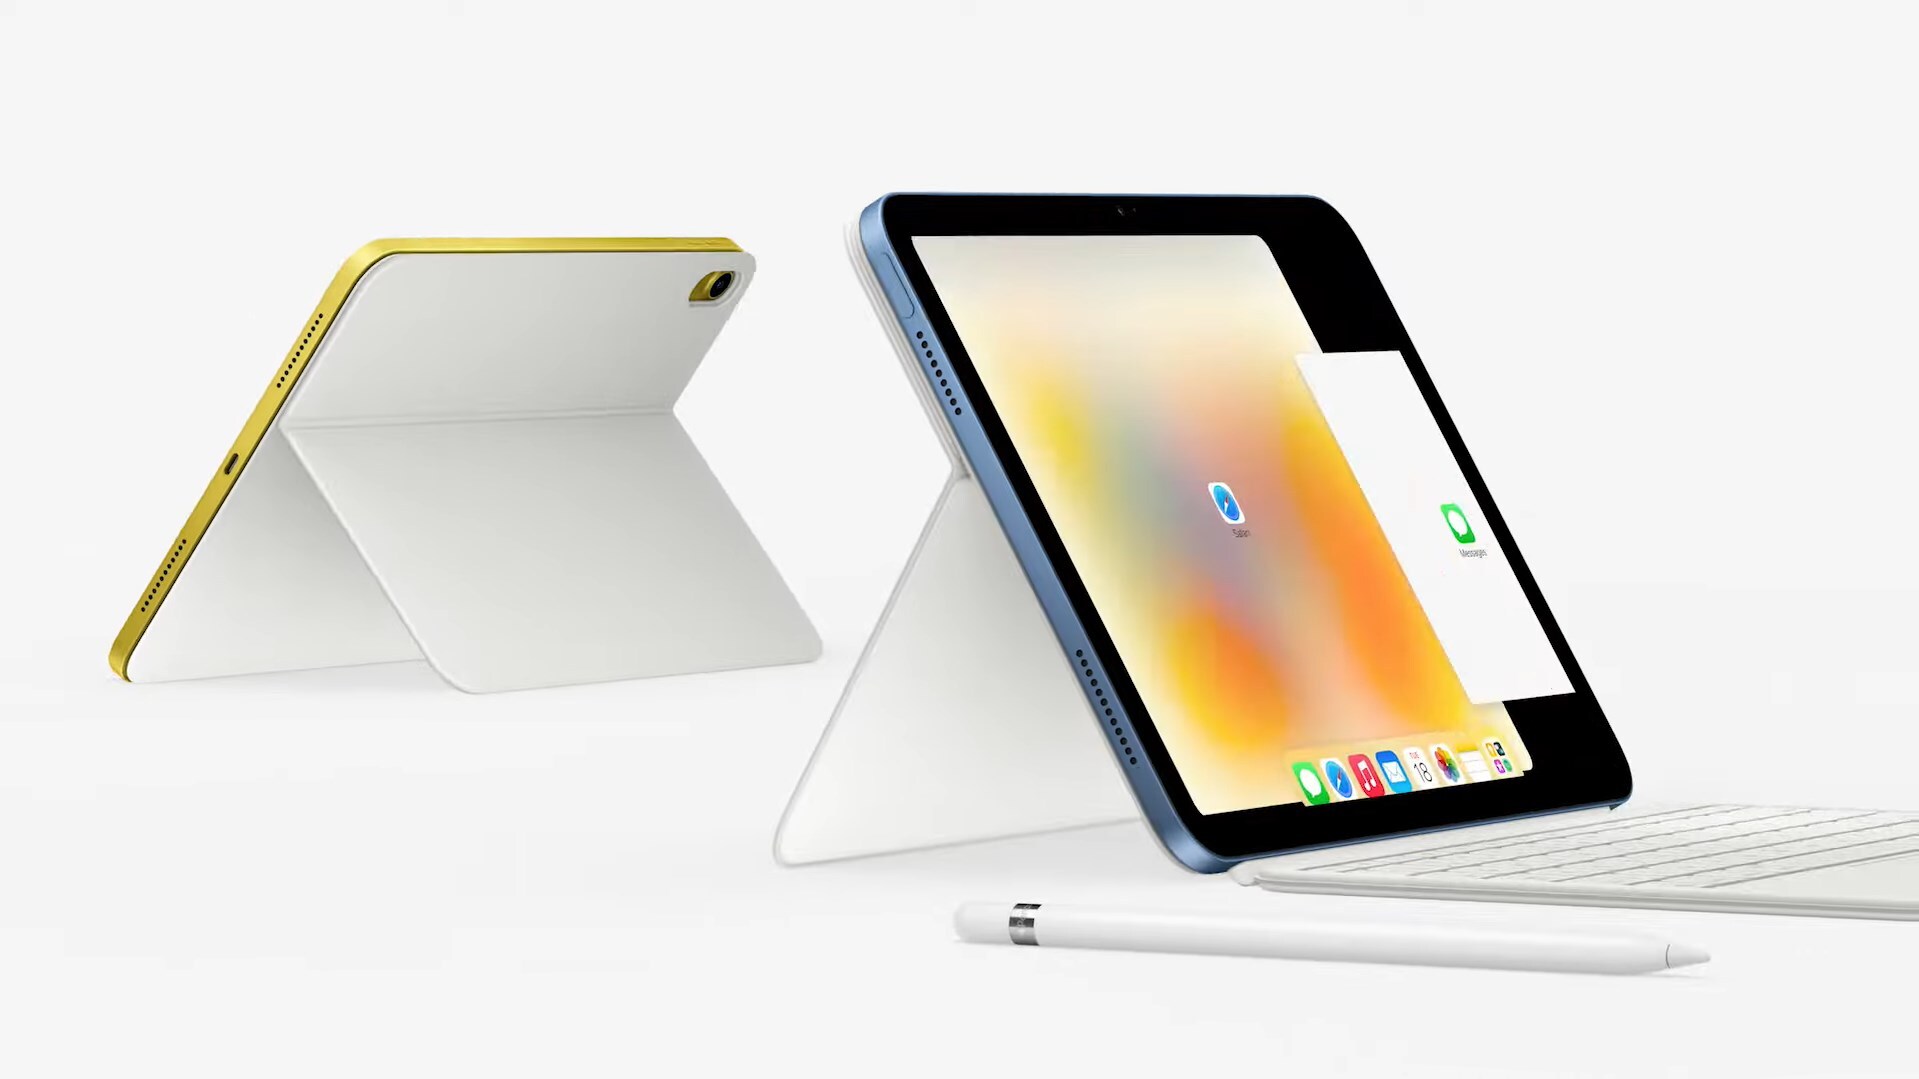 ドコモの新しい「iPad Pro」「iPad」、価格が決定 - ケータイ Watch